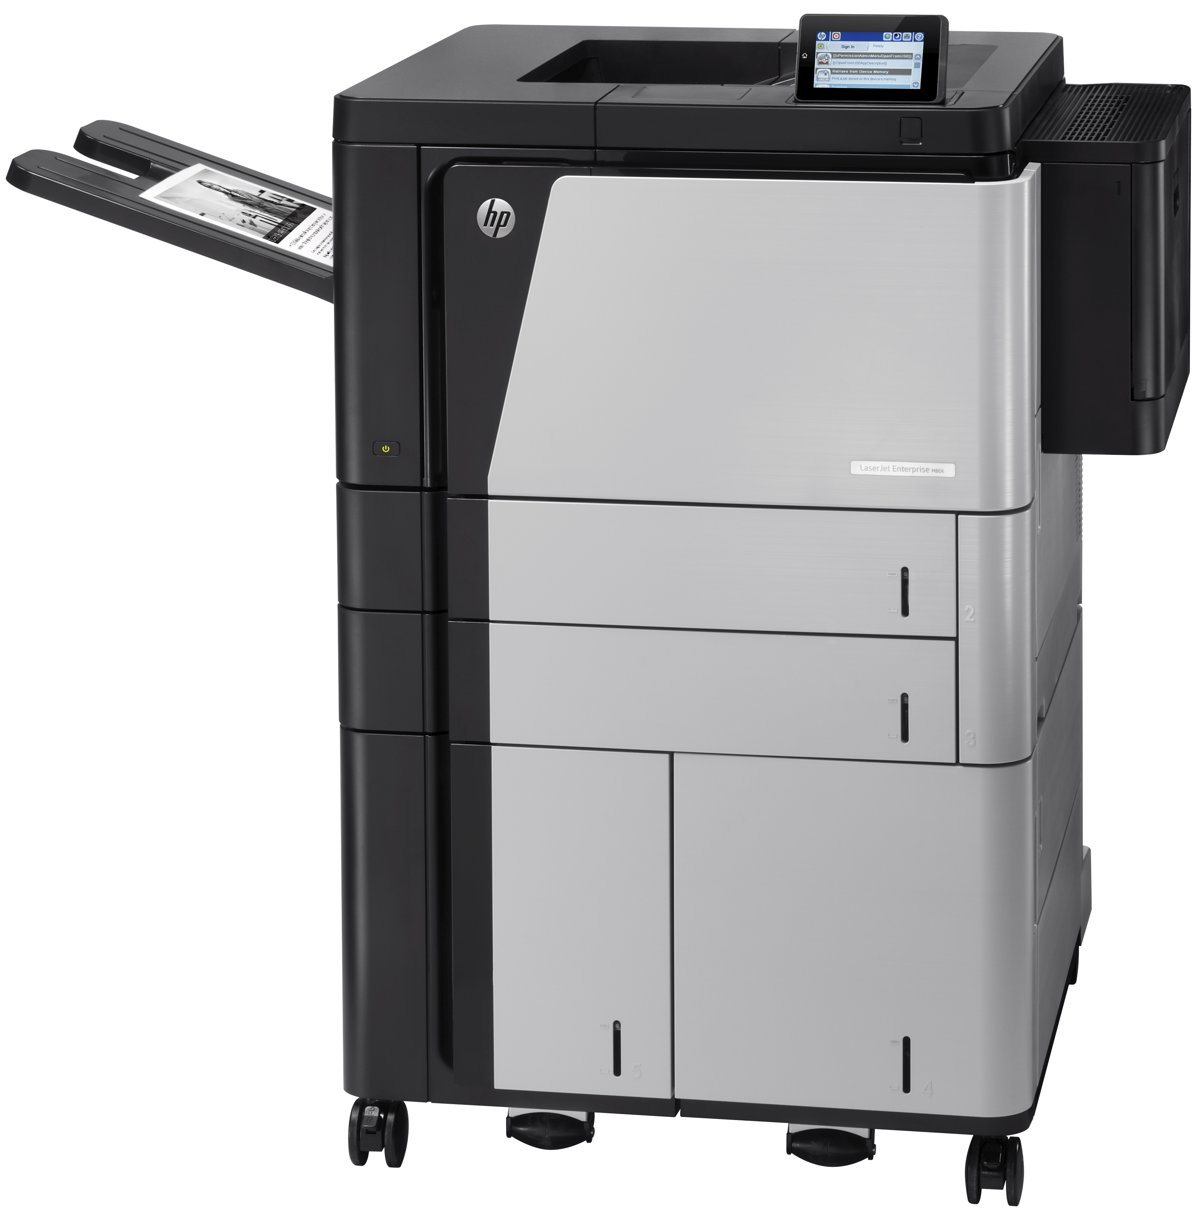 Tiskárna HP LaserJet Enterprise800 M806x+